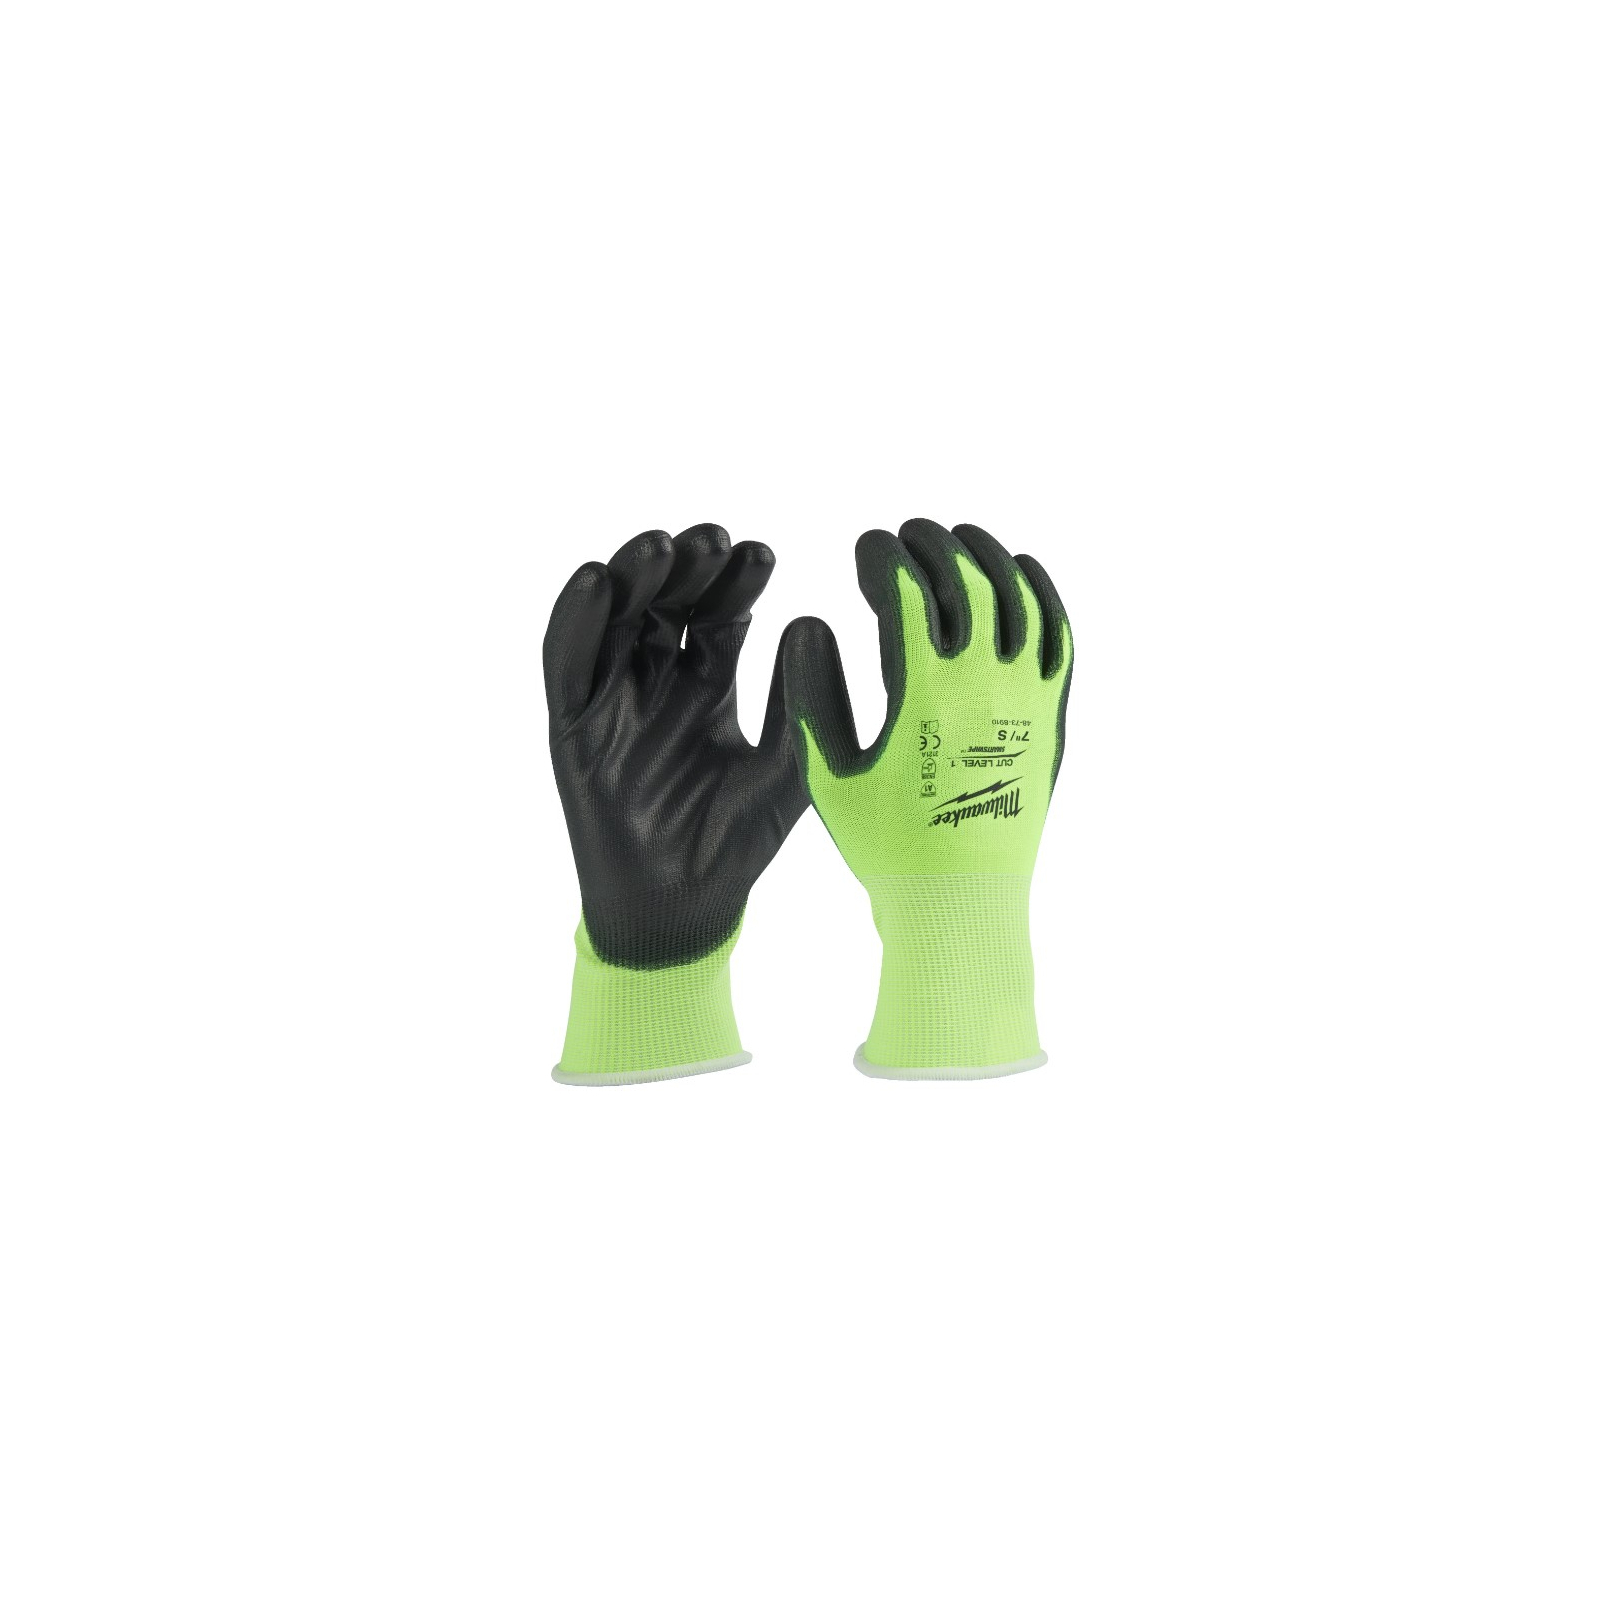 Защитные перчатки Milwaukee Hi-Vis Cut размер M/8, 12 пар (4932492914) изображение 2